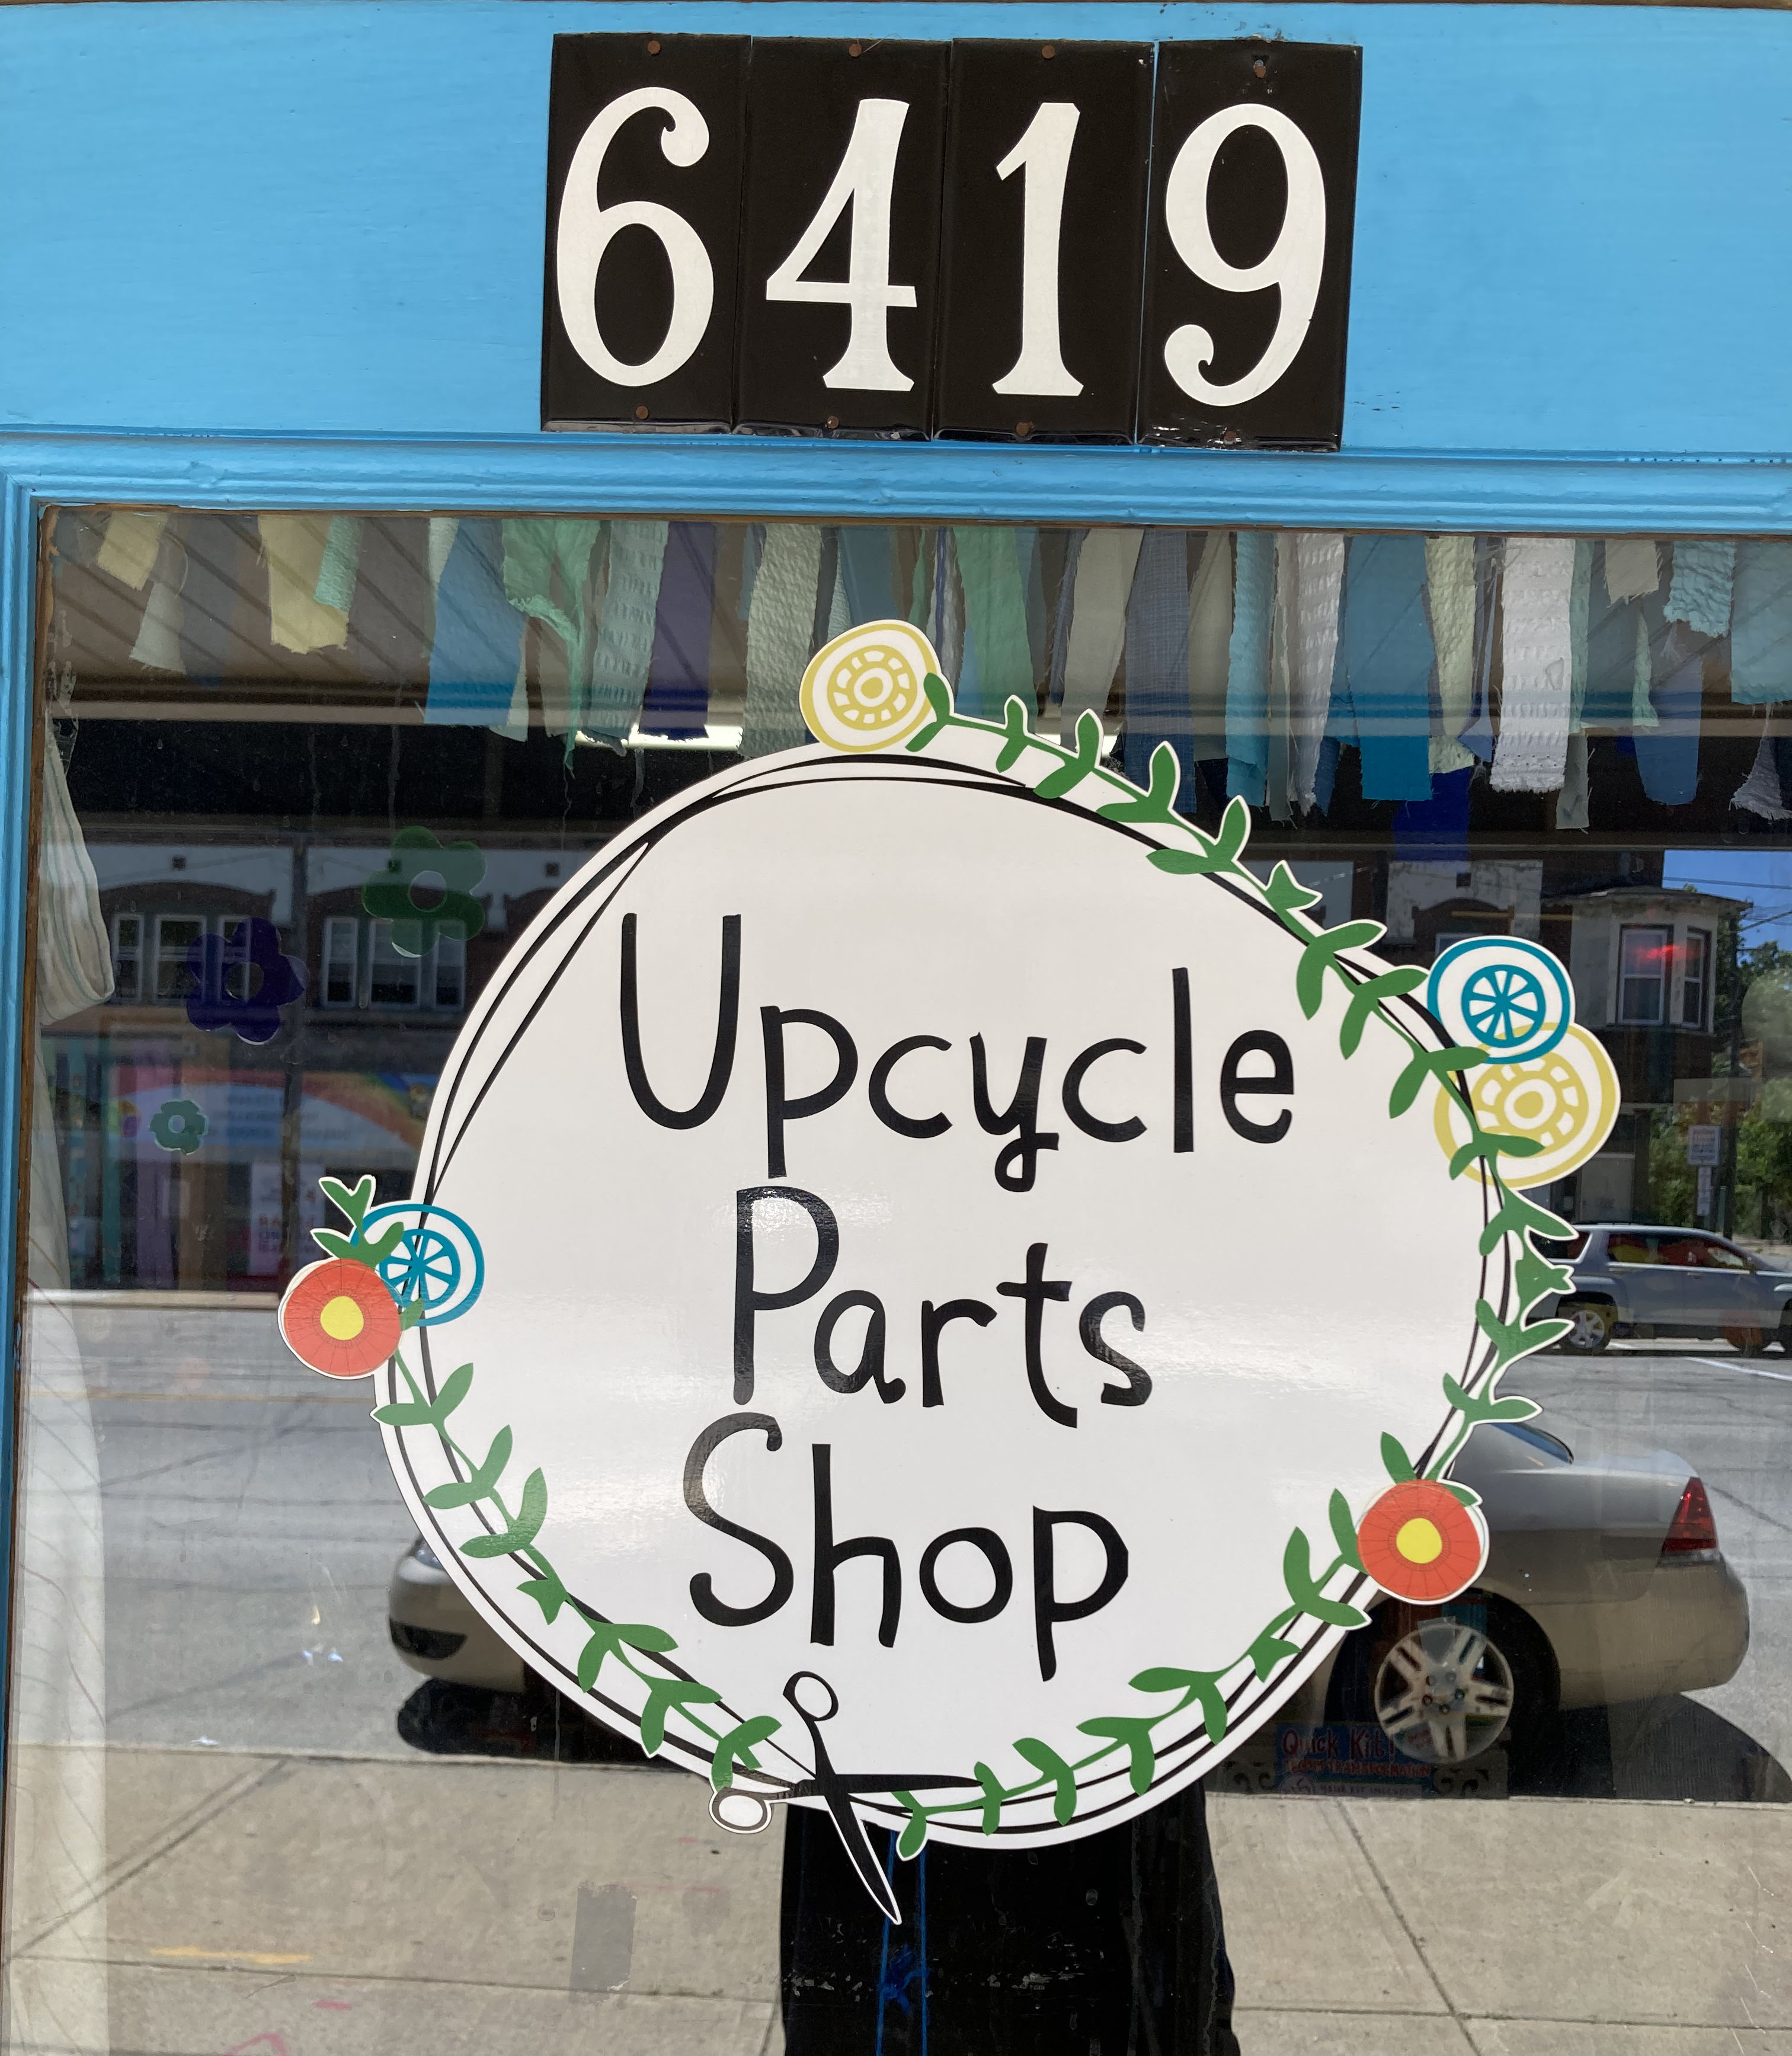 Upcycle Parts Shop (Photo credit: John Skrtic)